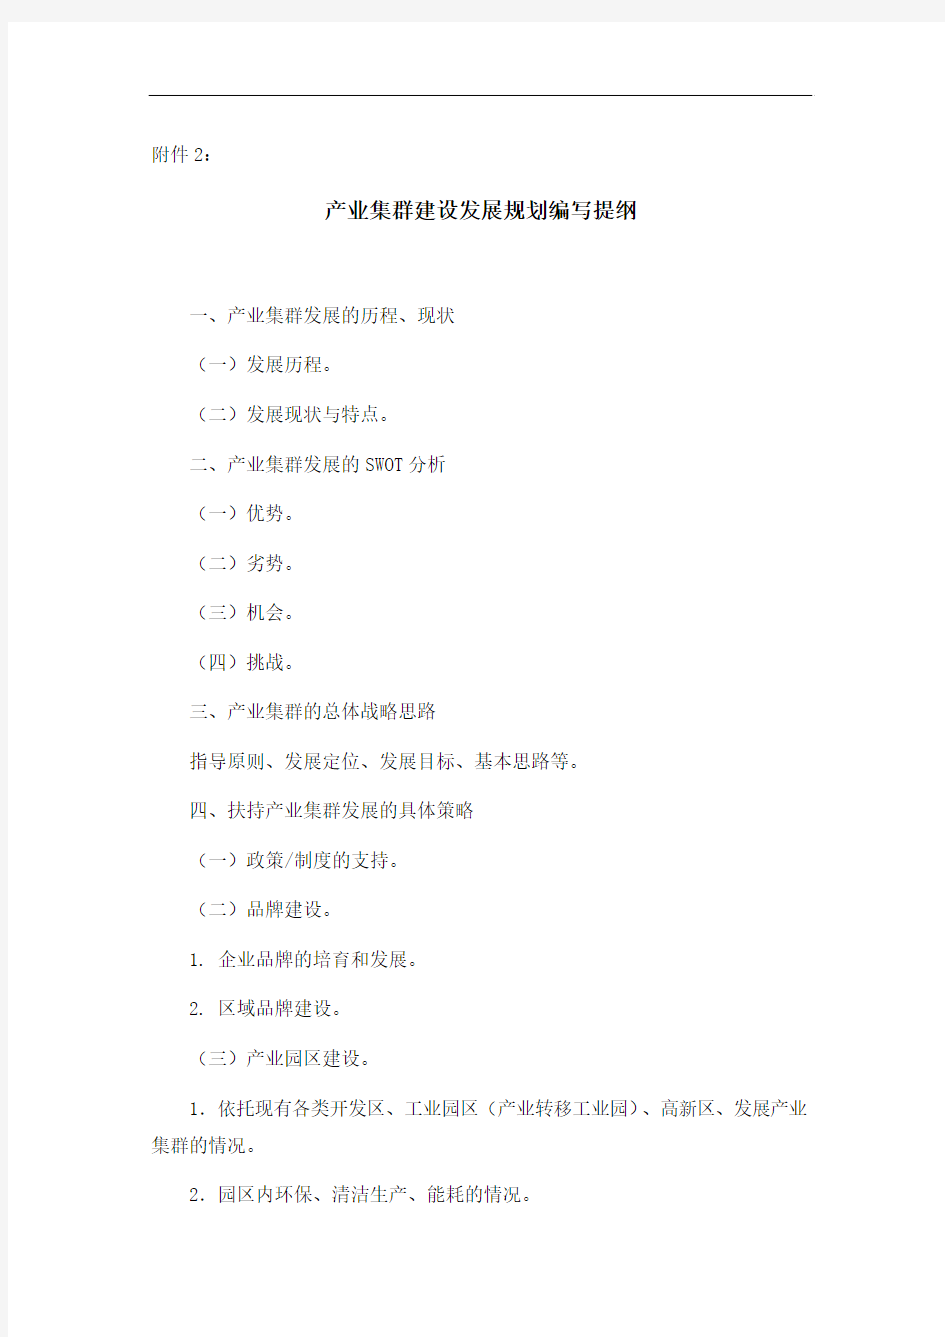 广东省产业集群升级示范区申报表格式